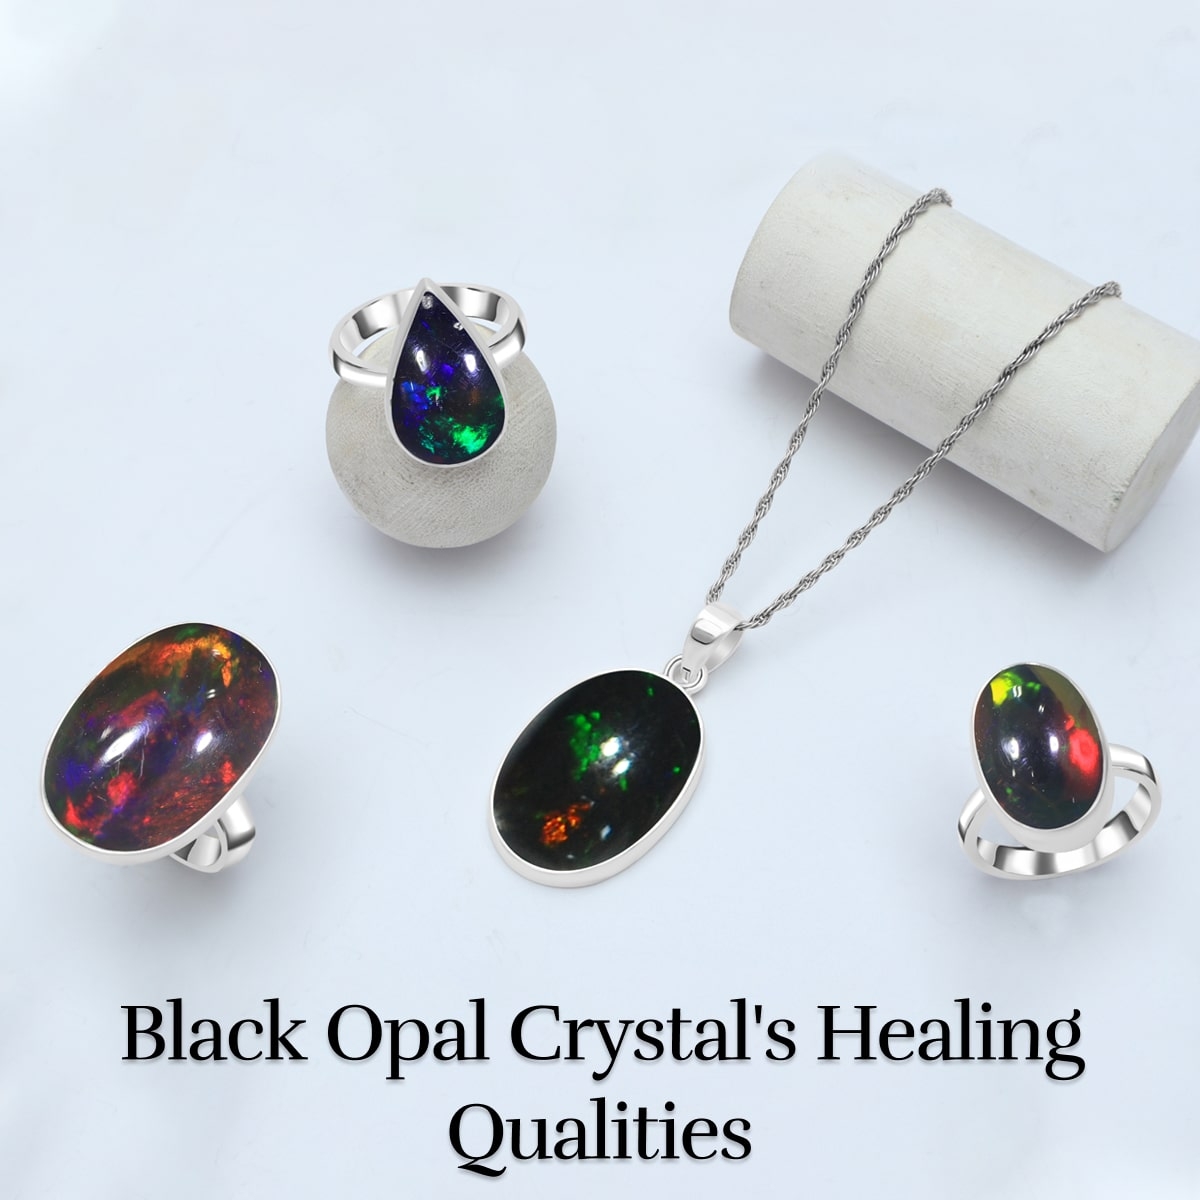 Healing Properties of Black Opal Crystal